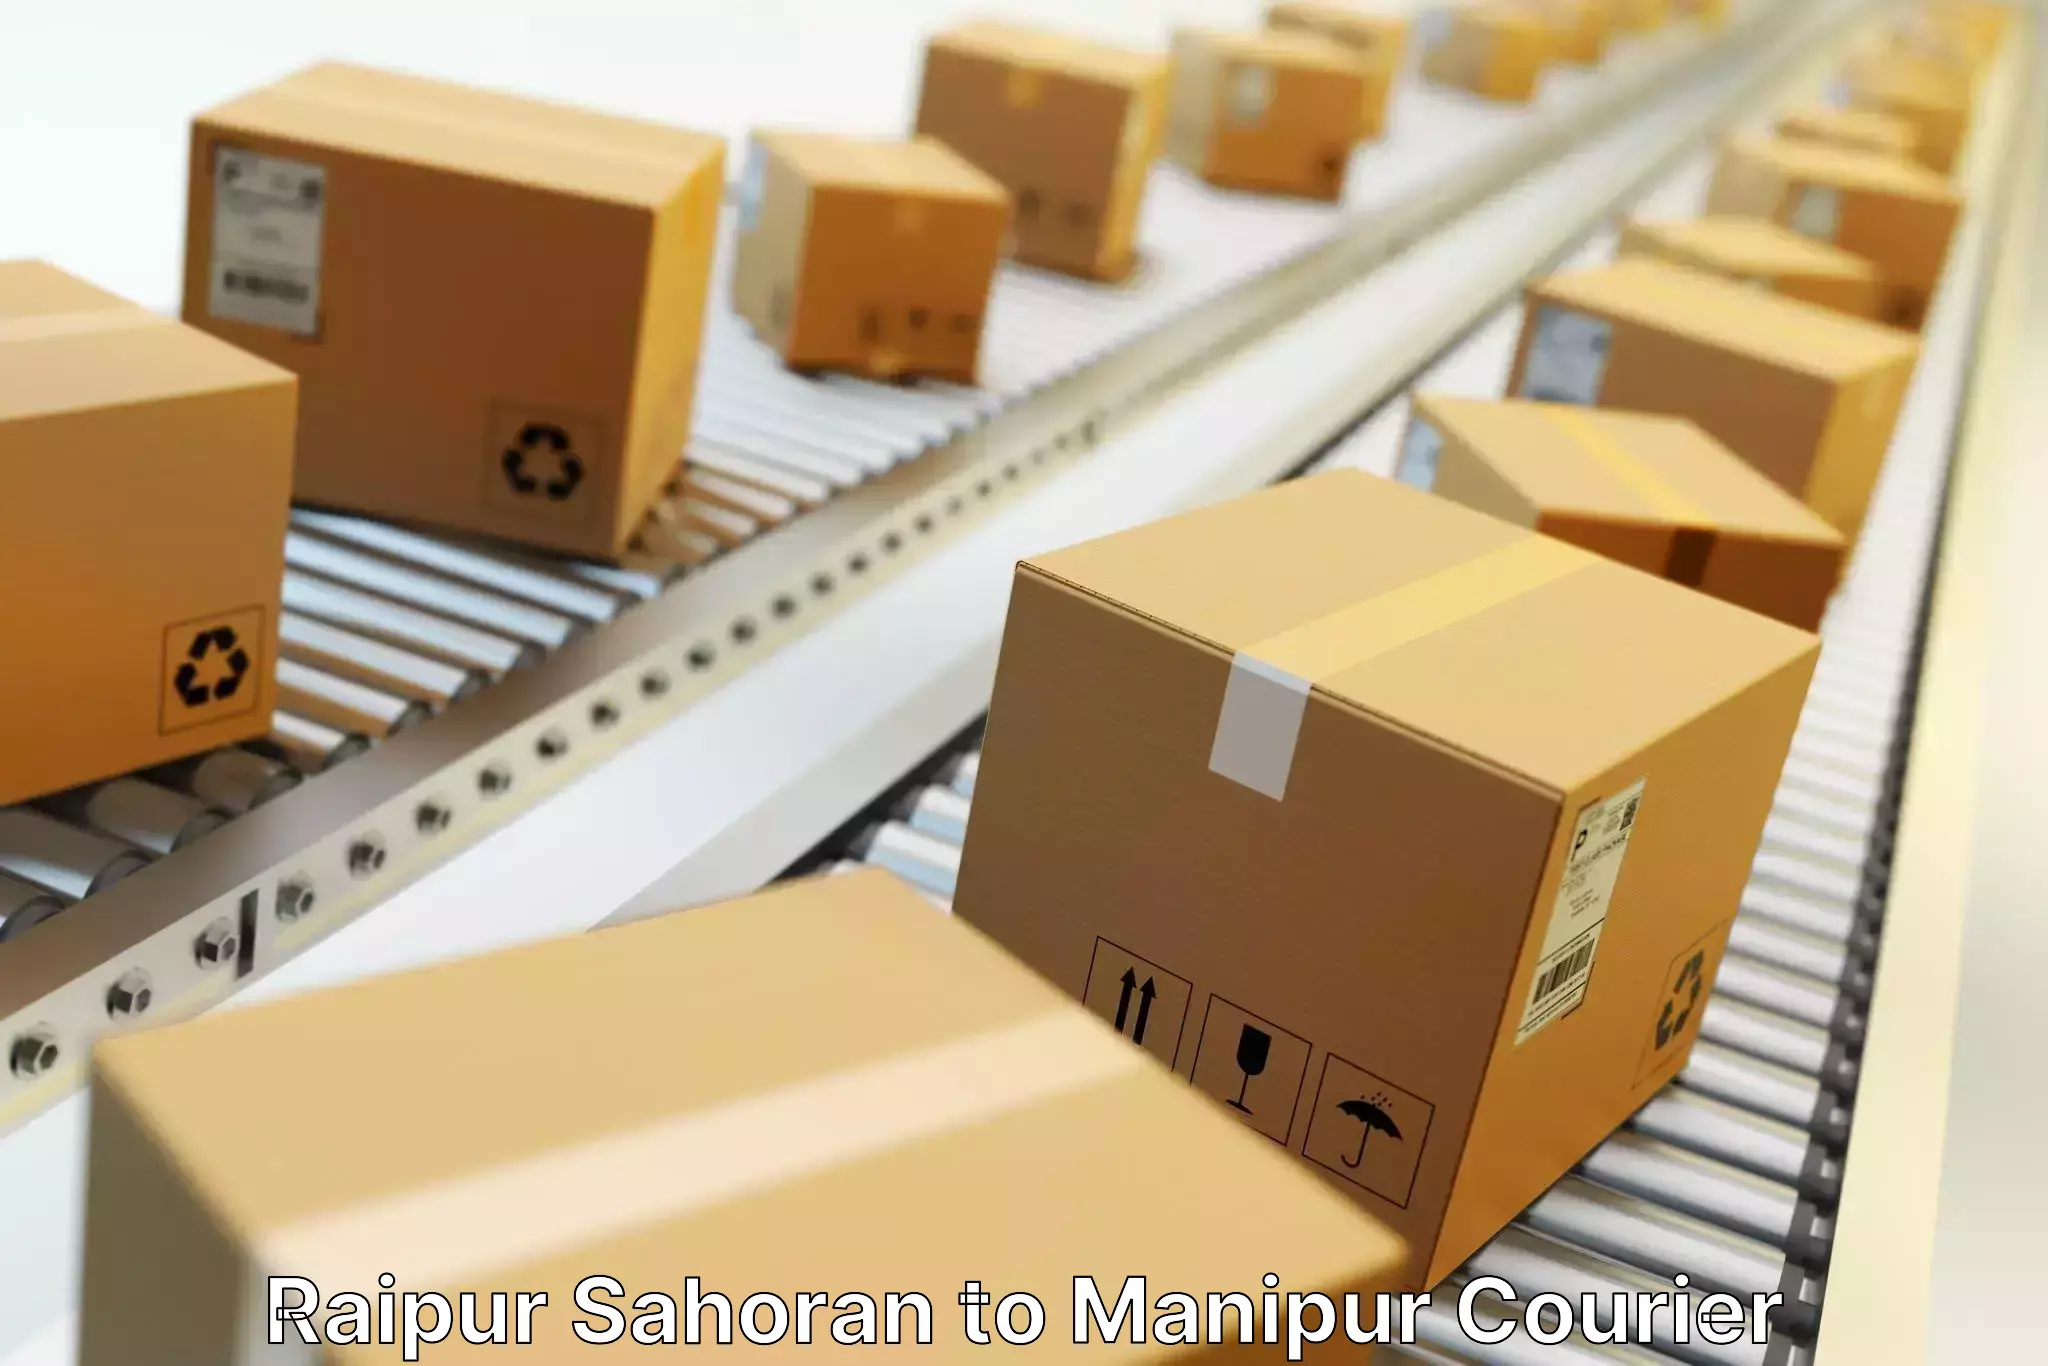 Supply chain efficiency in Raipur Sahoran to Kakching